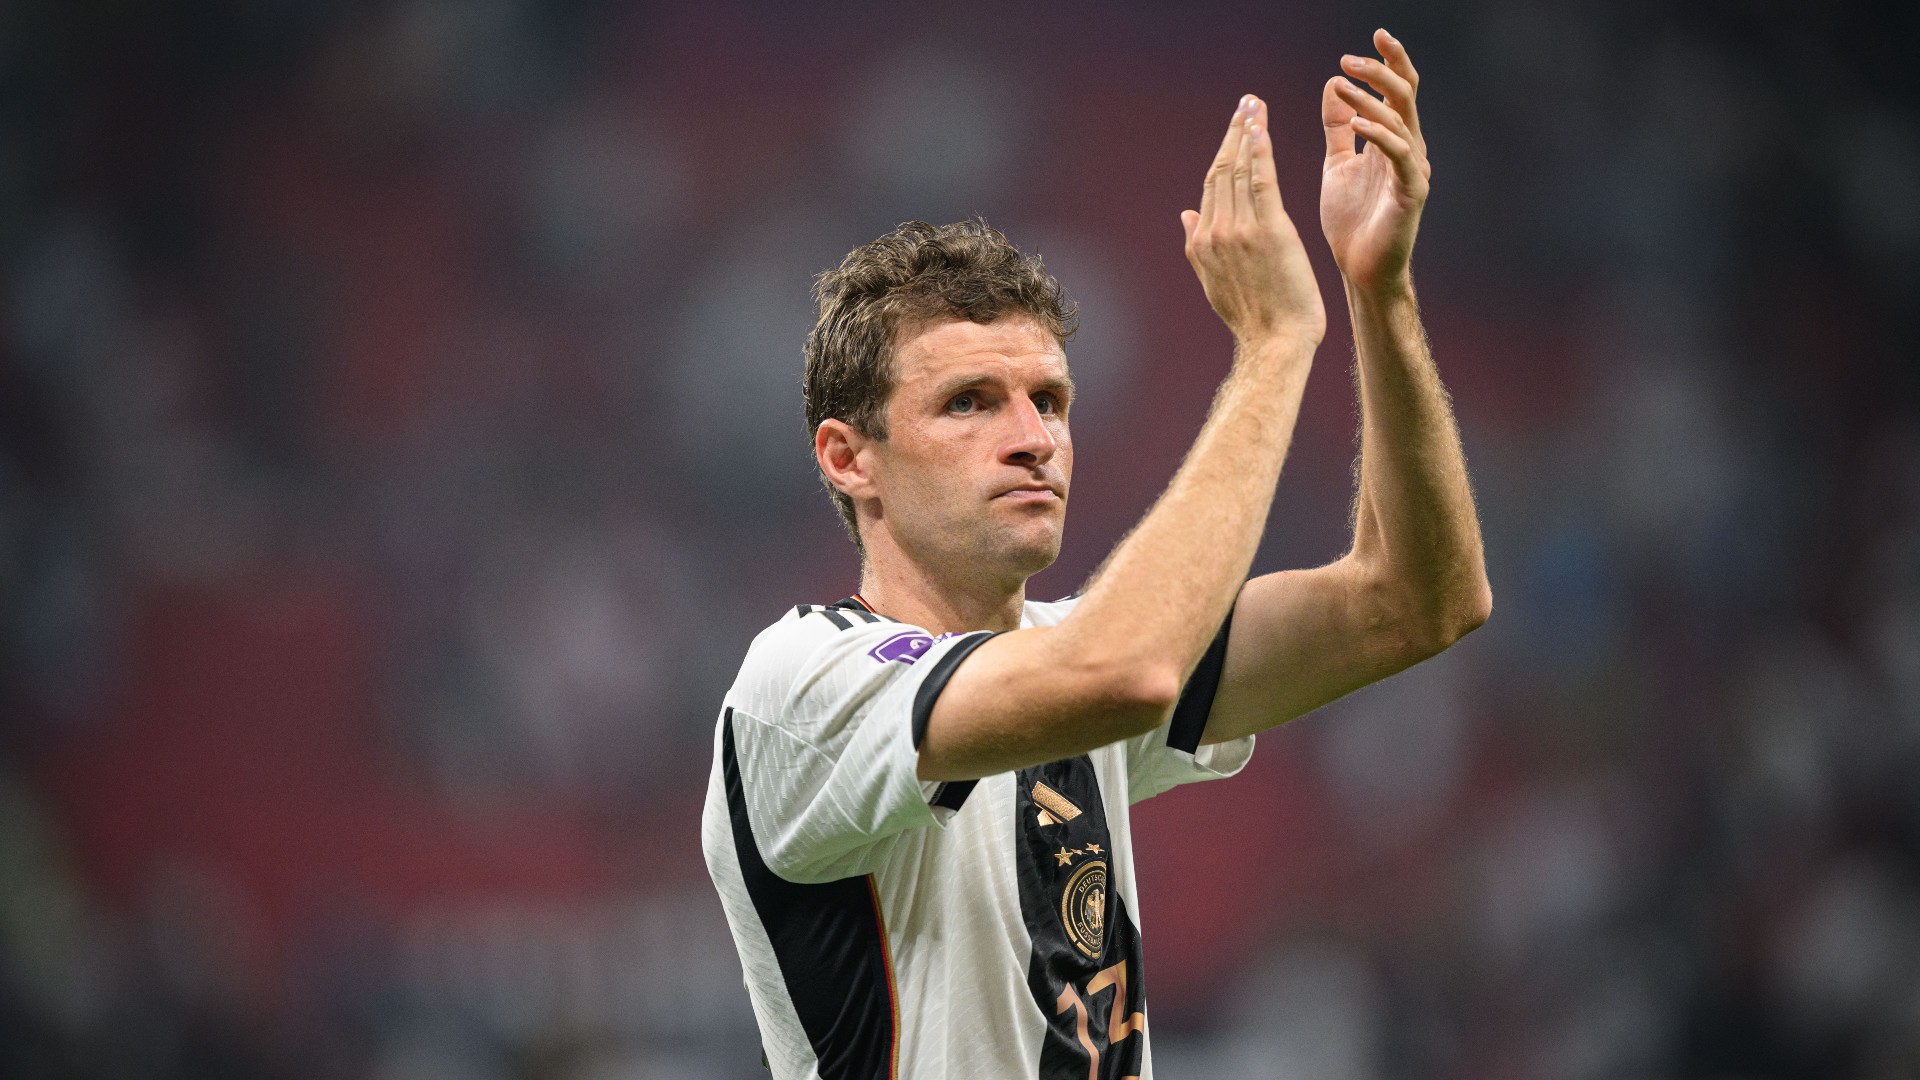 Matthäus le aconsejó a Müller que se concentre en Bayern Munich